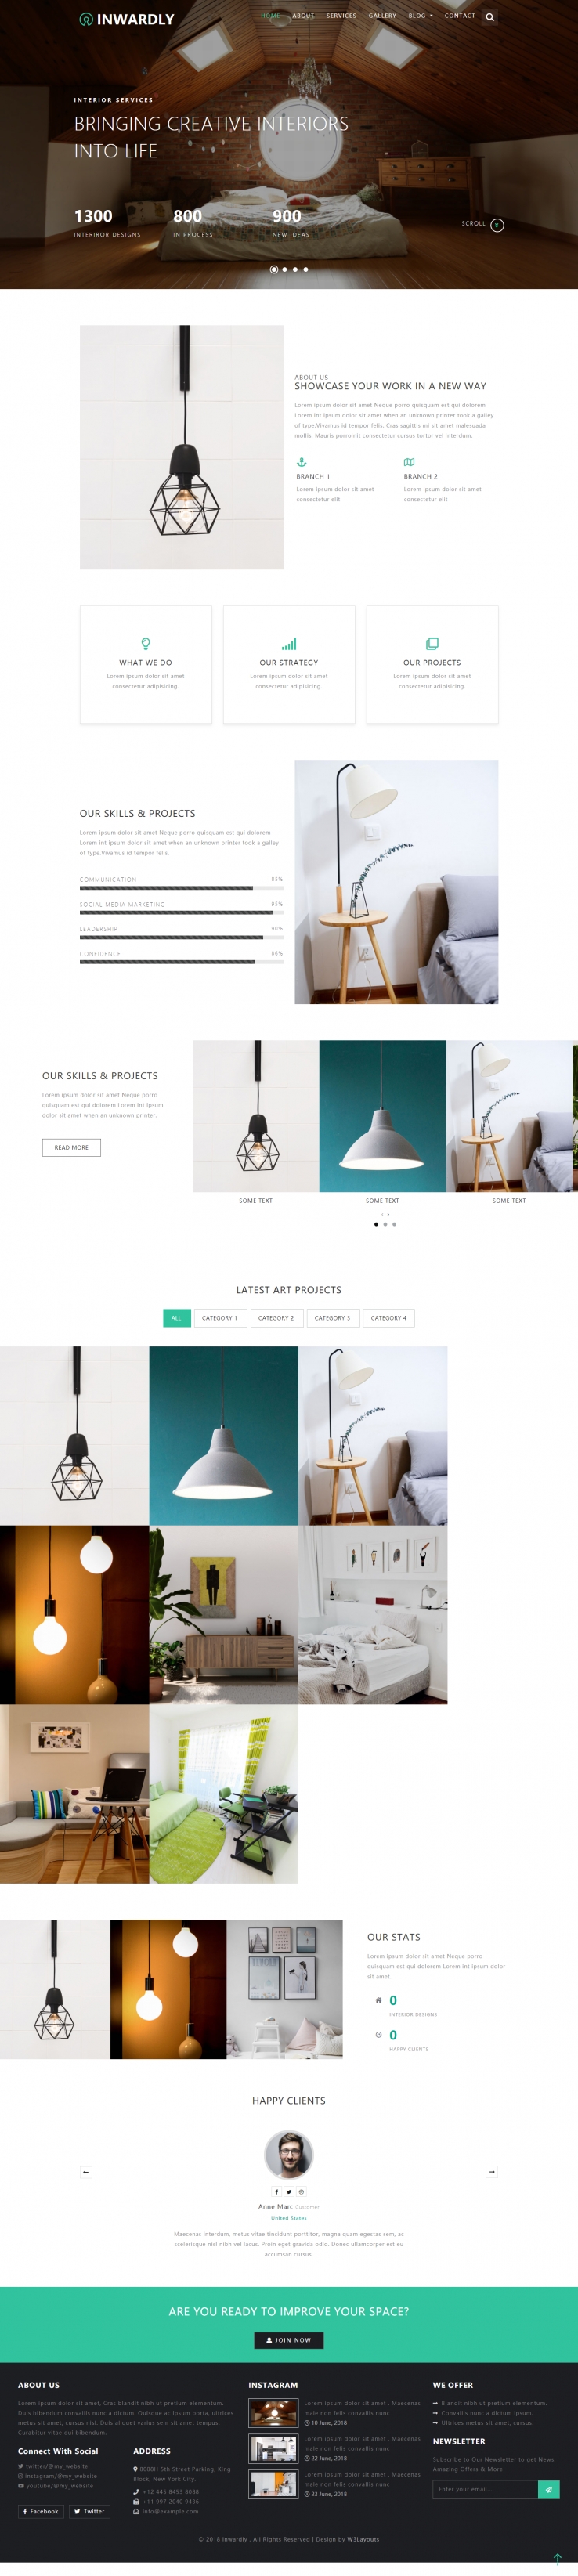 绿色简洁风格的室内灯饰装饰整站网站源码下载